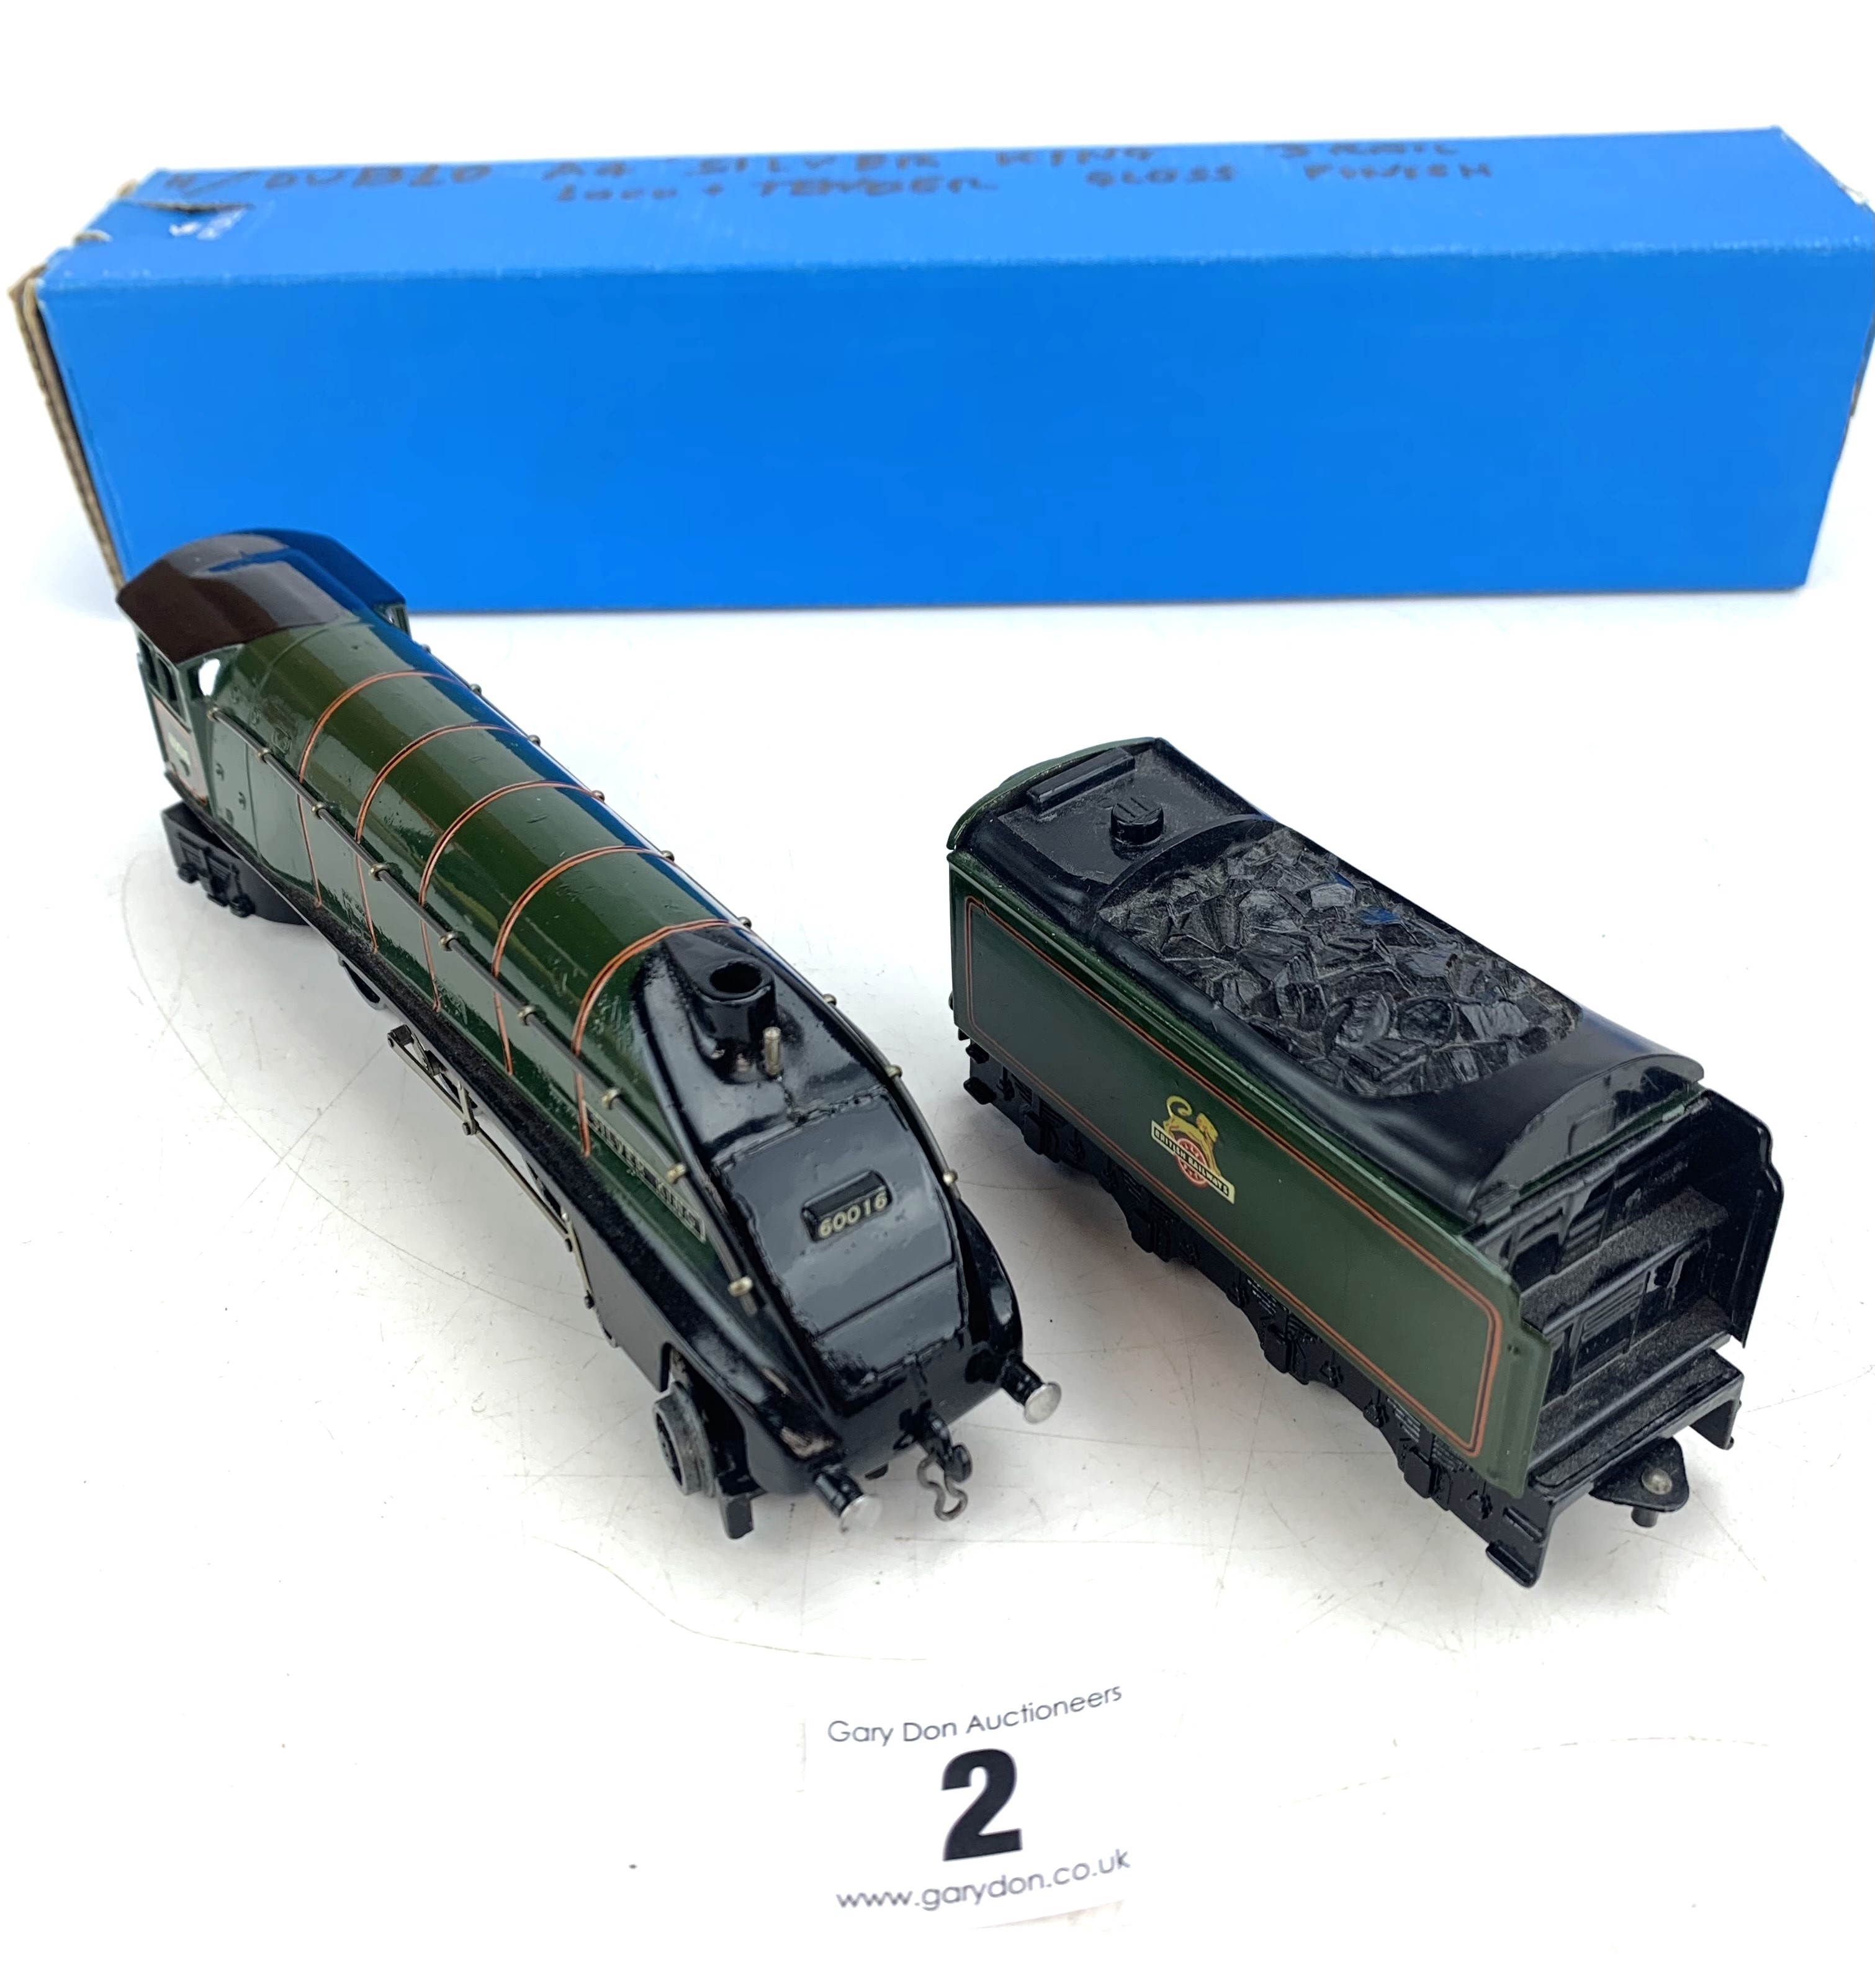 Hornby loco & tender - Image 4 of 4